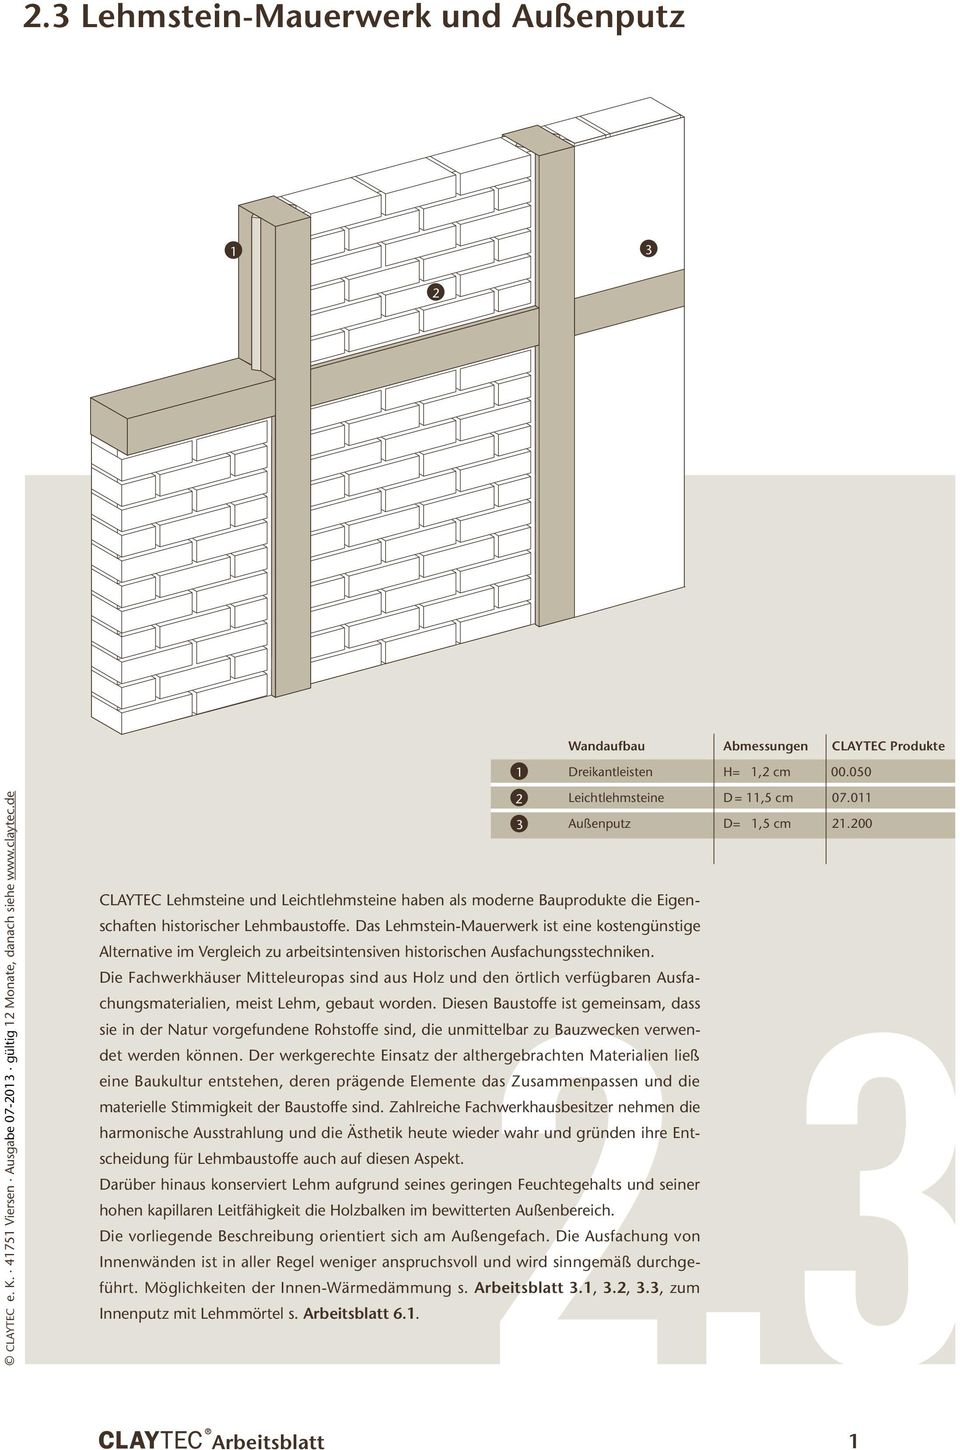 Das Lehmstein-Mauerwerk ist eine kostengünstige 2.3 Alternative im Vergleich zu arbeitsintensiven historischen Ausfachungsstechniken.